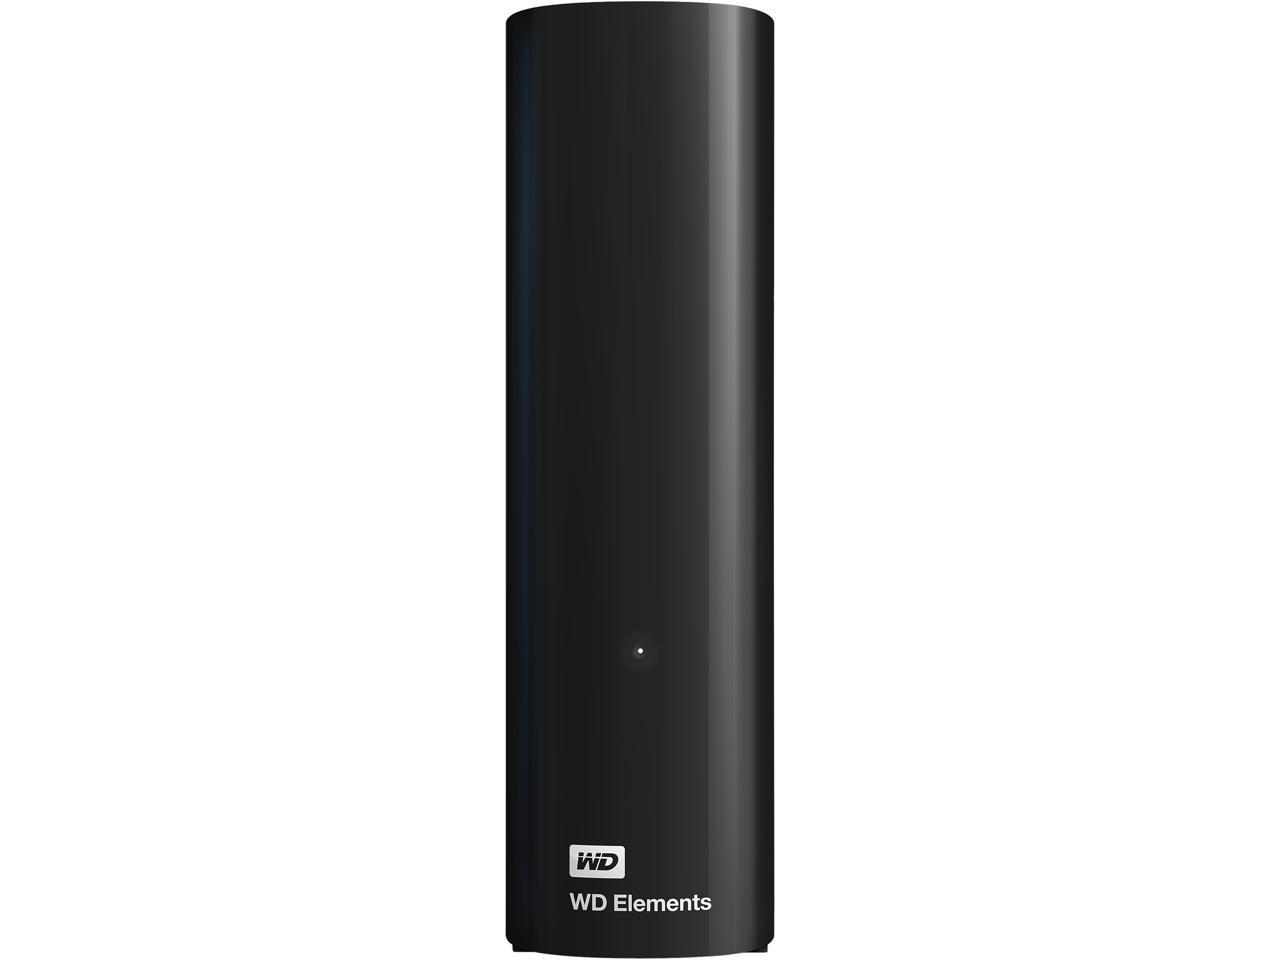 10TB WD Elements USB 3.0 Desktop Hard Drive @Newegg $170